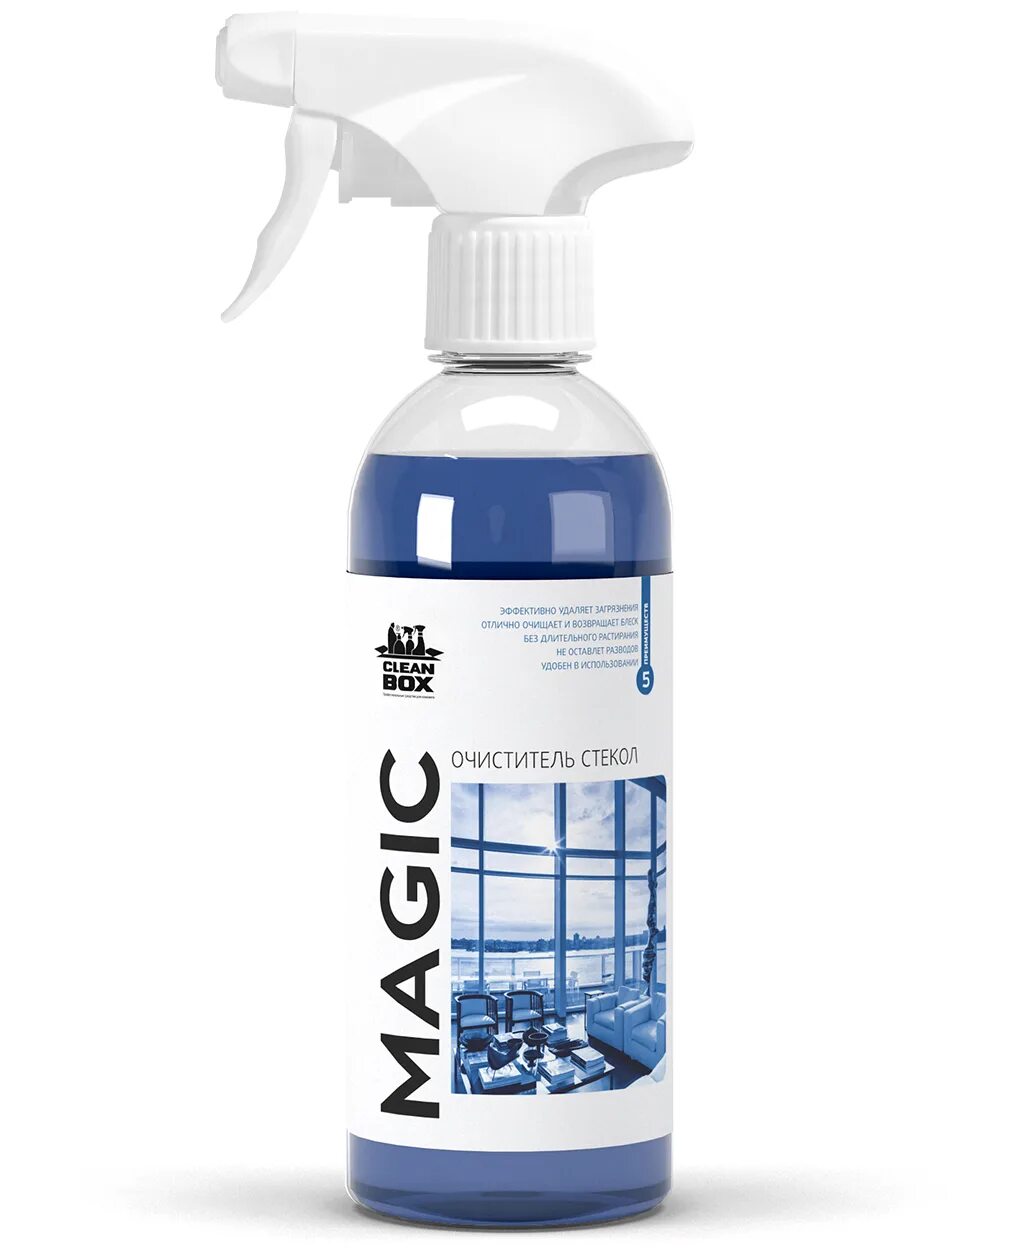 Очиститель стекол CLEANBOX Magic (0,5л) триггер. Magic CLEANBOX очиститель стекол Magic (0,5л) сменный флакон. Спрей Vortex Magic очиститель стекол. Очиститель стекол fl014 325мл.